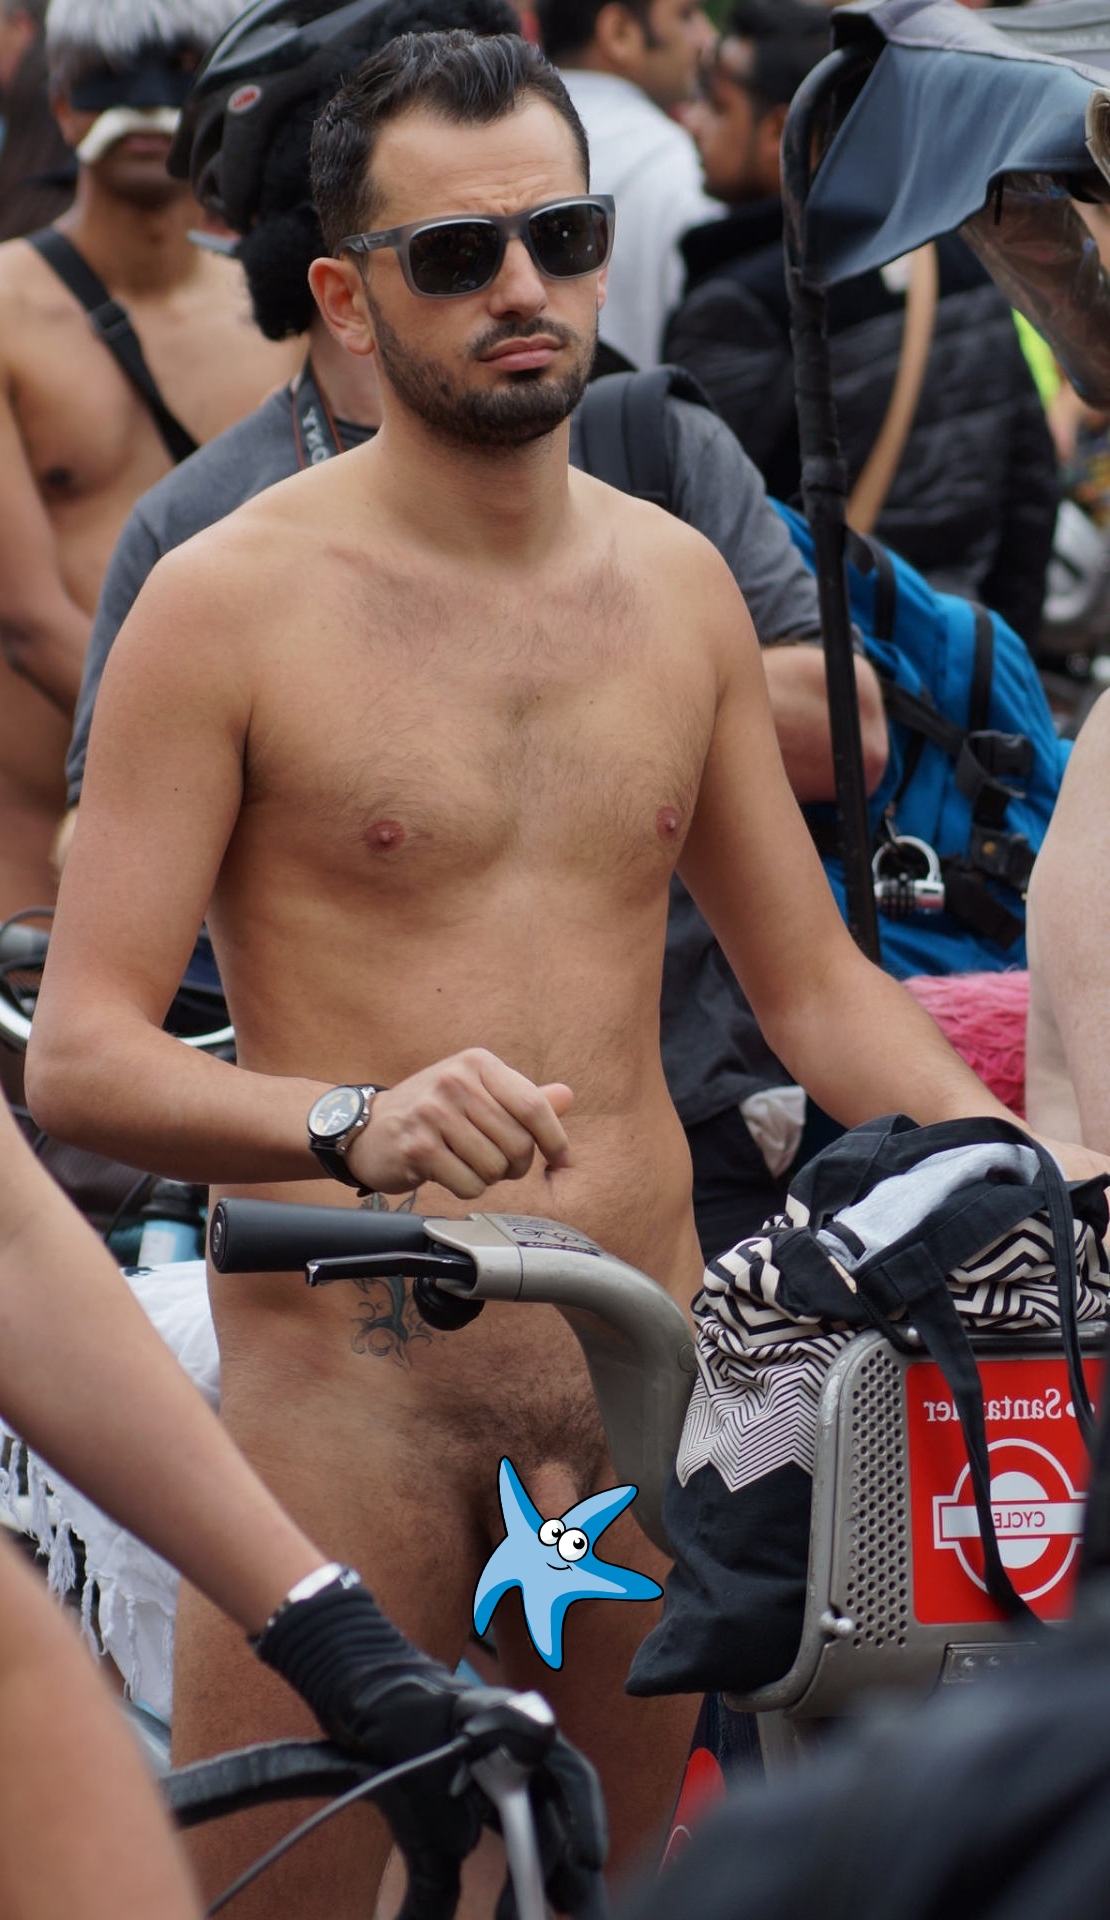 Nude man in the bike ride